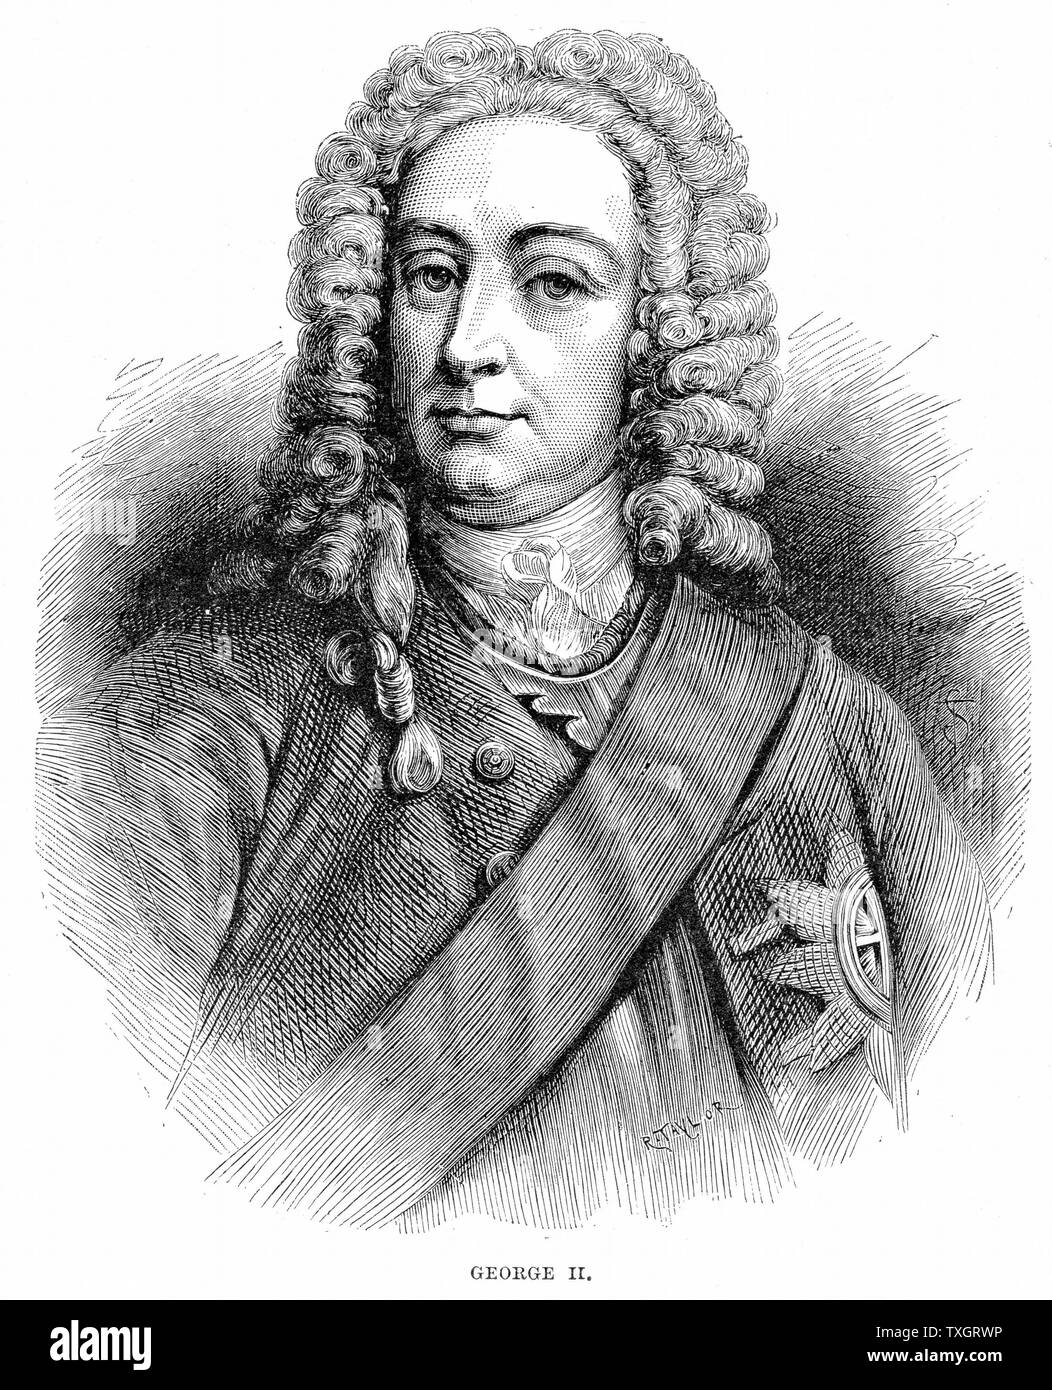 George II (1683-1760) Roi de Grande-Bretagne et d'Irlande et Électeur de Hanovre à partir de 1727 la gravure sur bois Banque D'Images